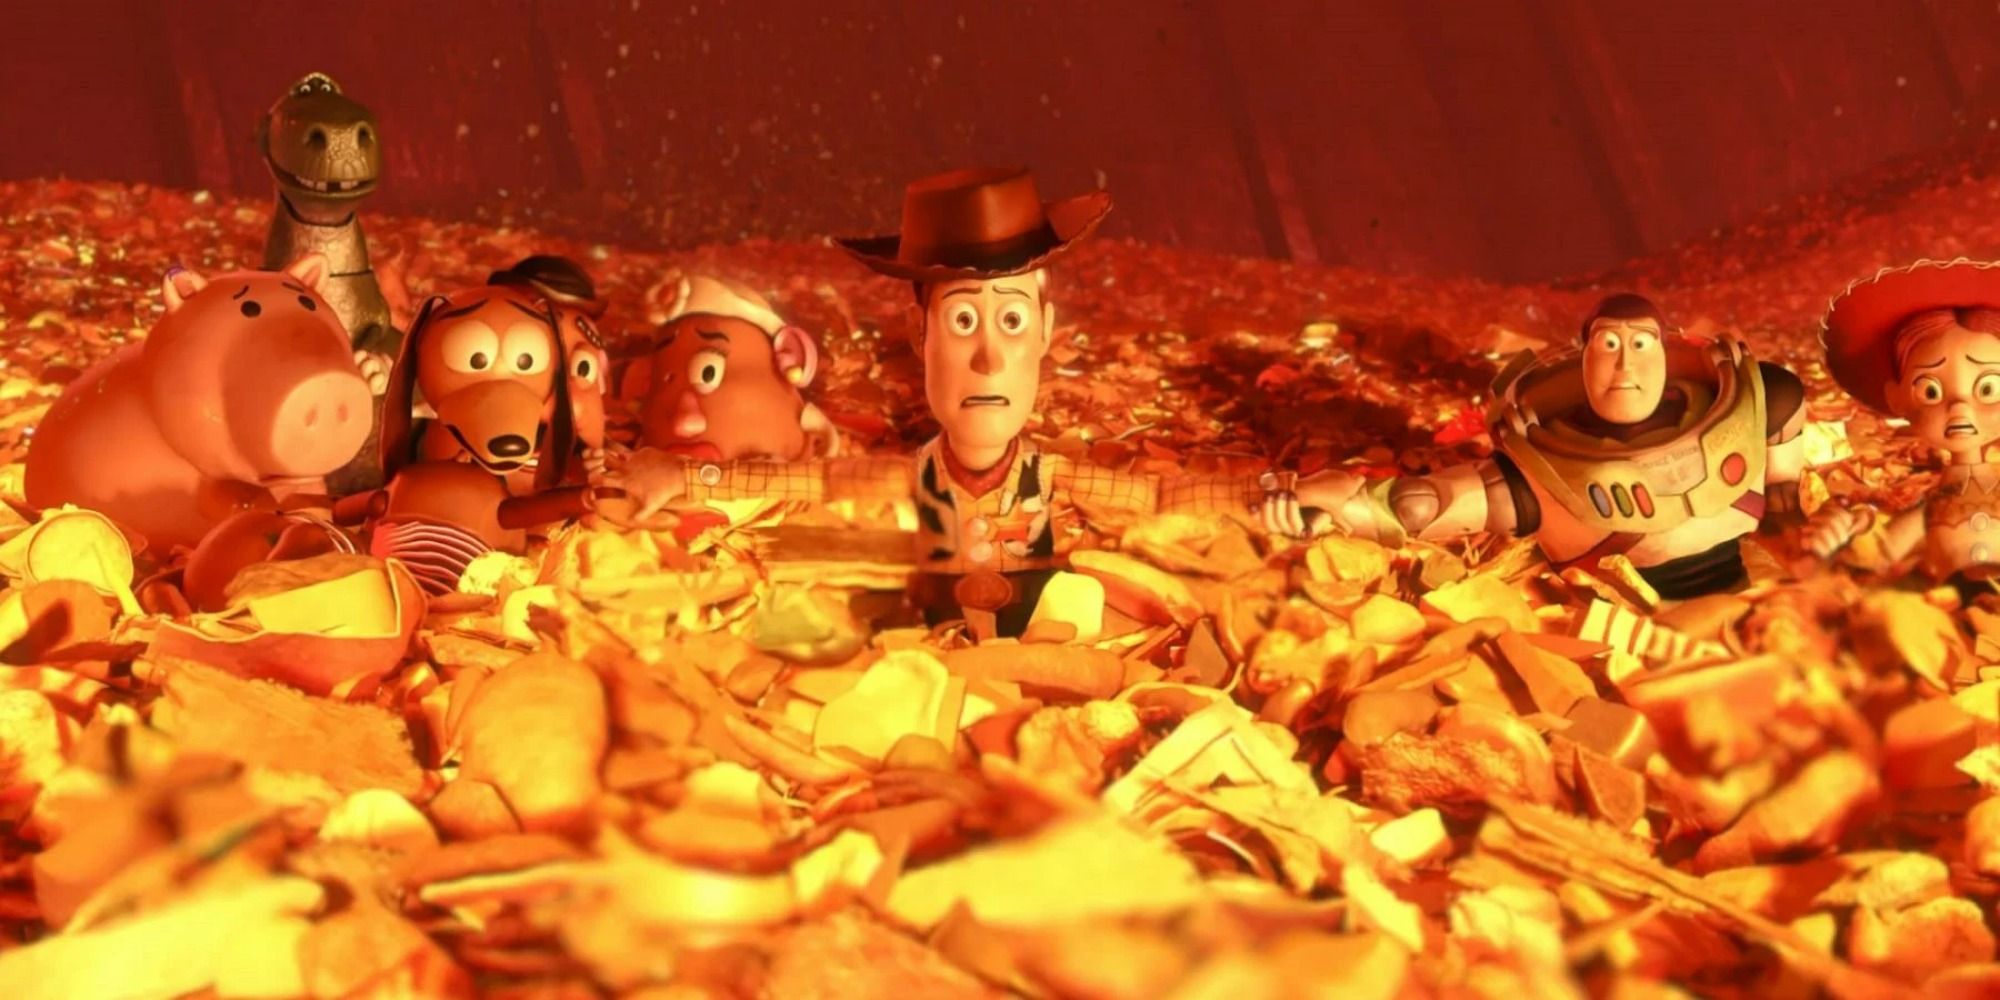 Scène de Toy Story 3 avec Woody, interprété par Tom Hanks, et Buzz Lightyear, interprété par Tim Allen, assis dans une poubelle sur le point d'être incinérée.